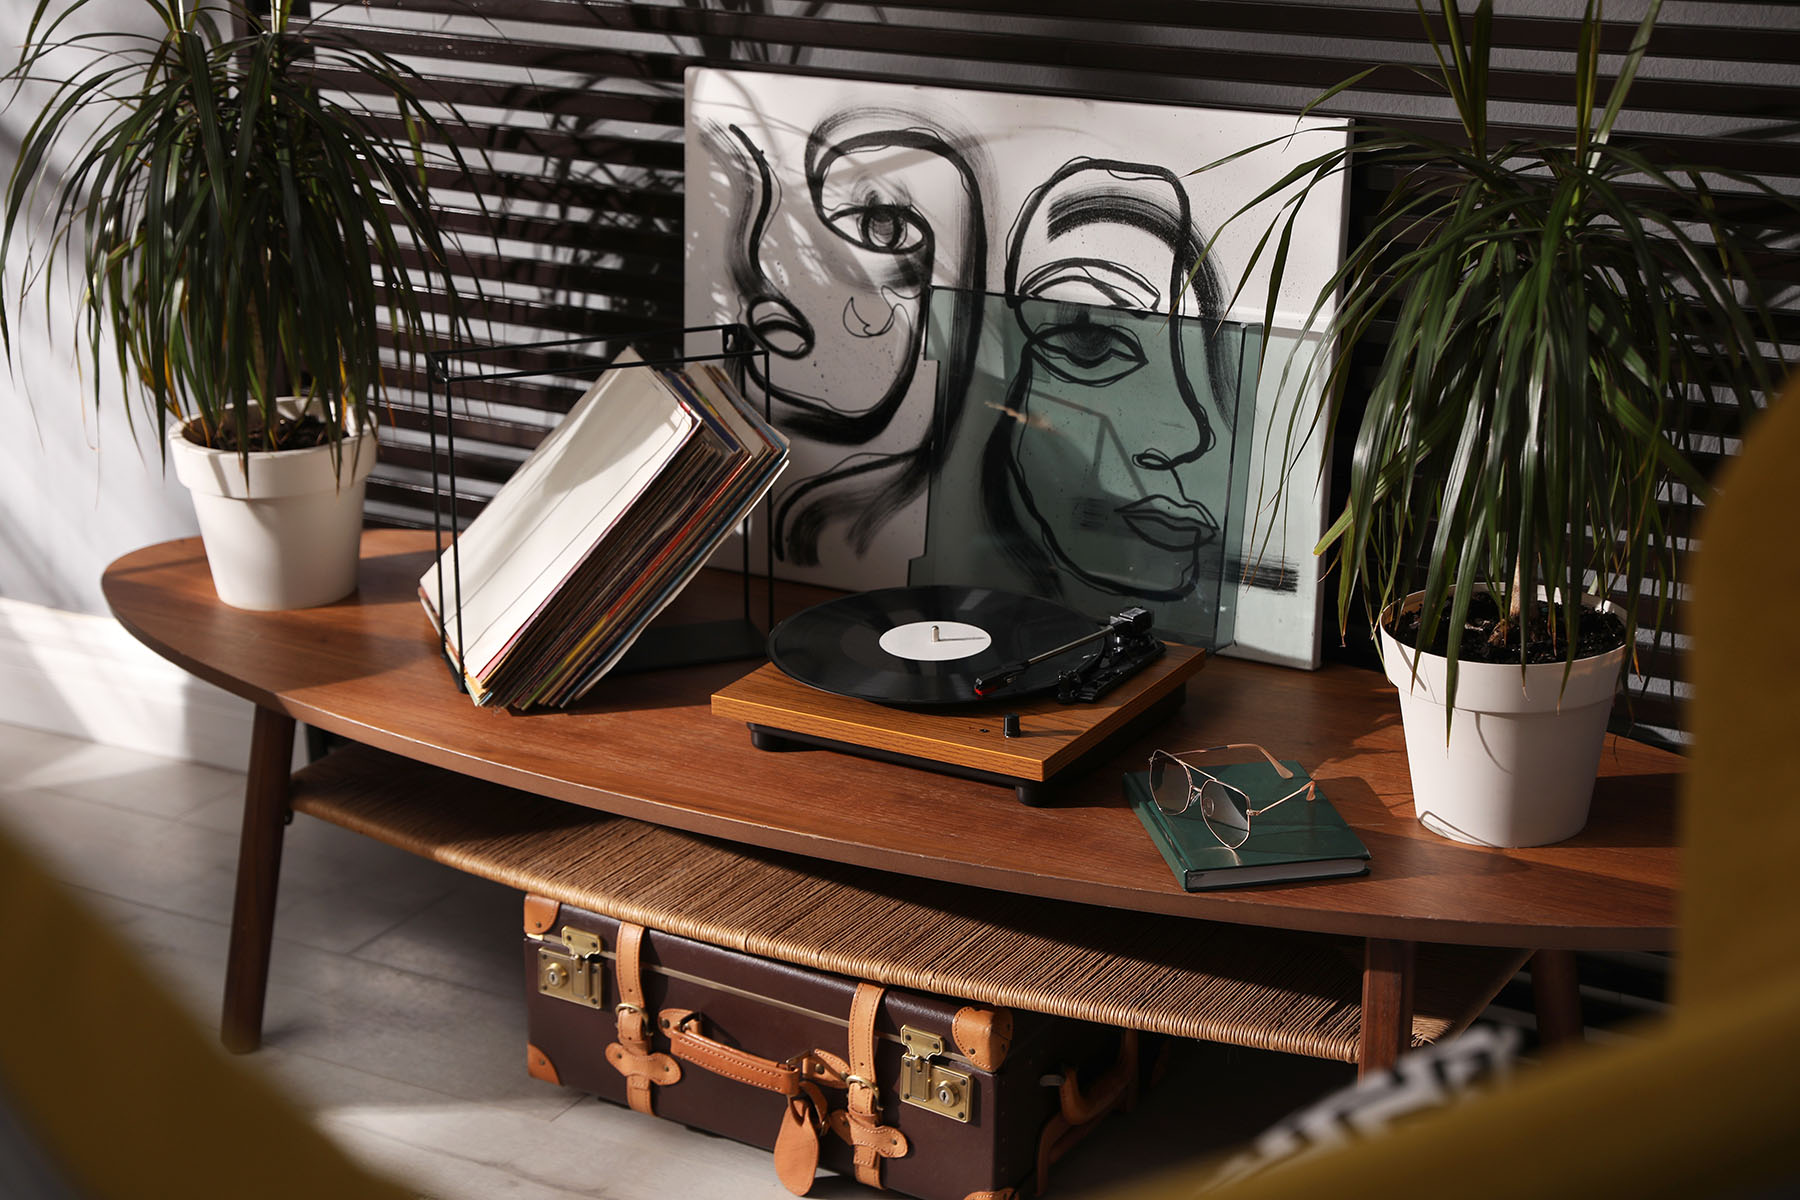 gramofon položený na stolku v pokoji